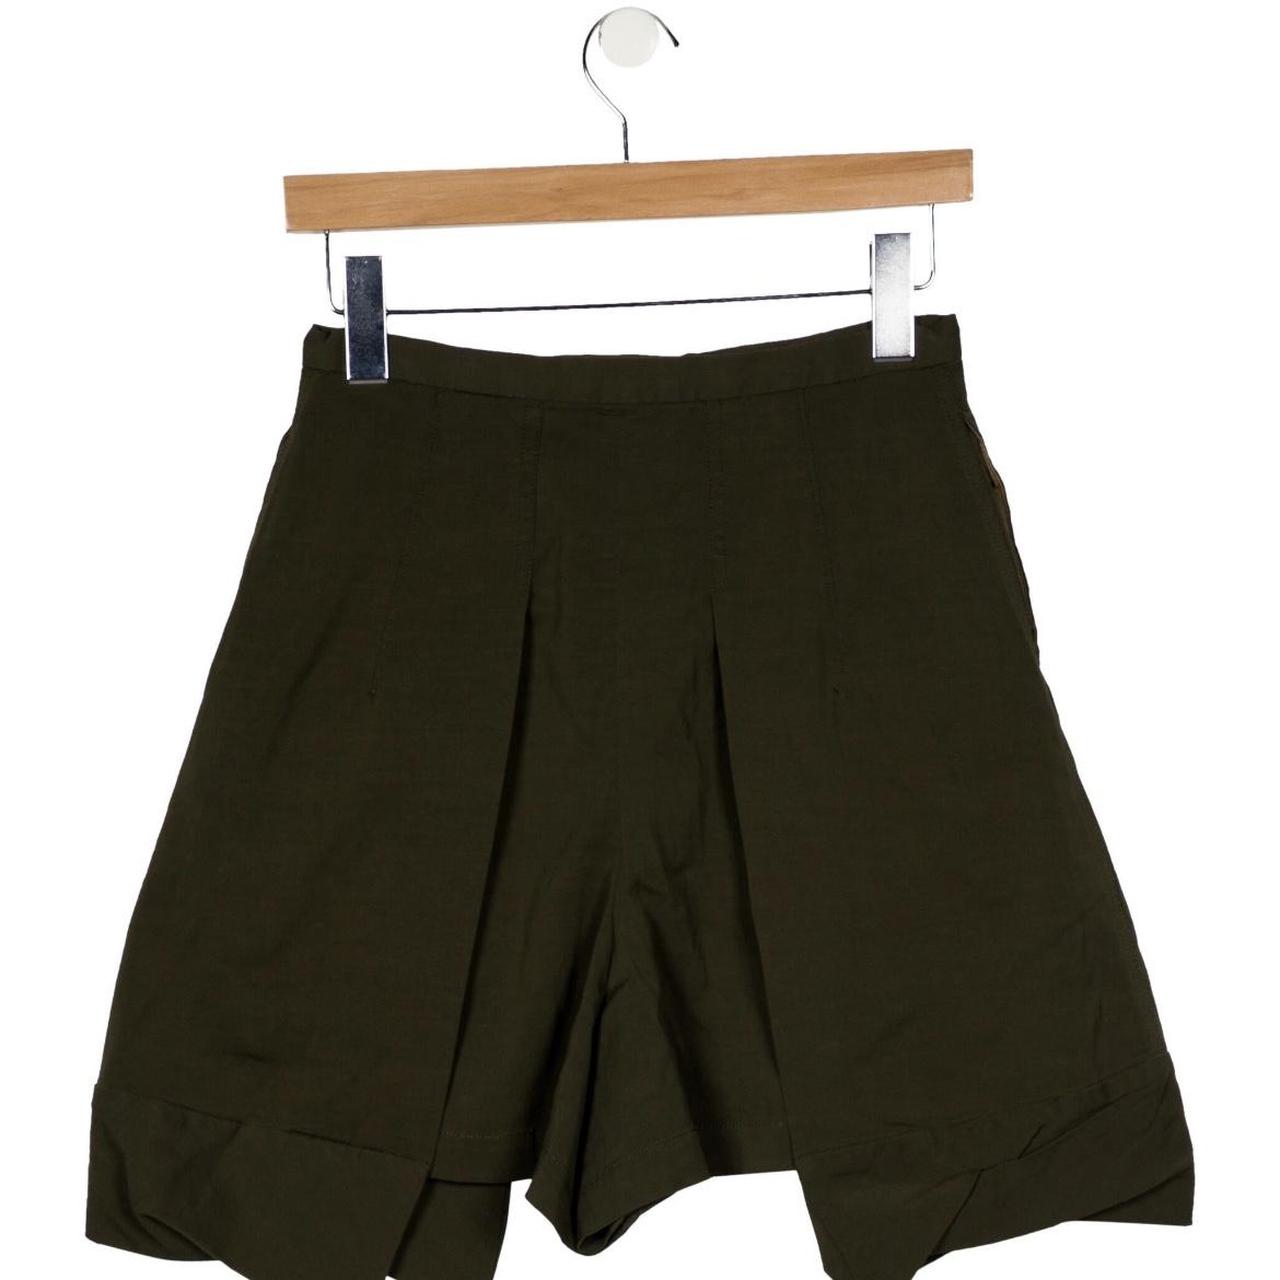 TOGA PULLA Shorts / Skort size S Dark olive. Front... - Depop